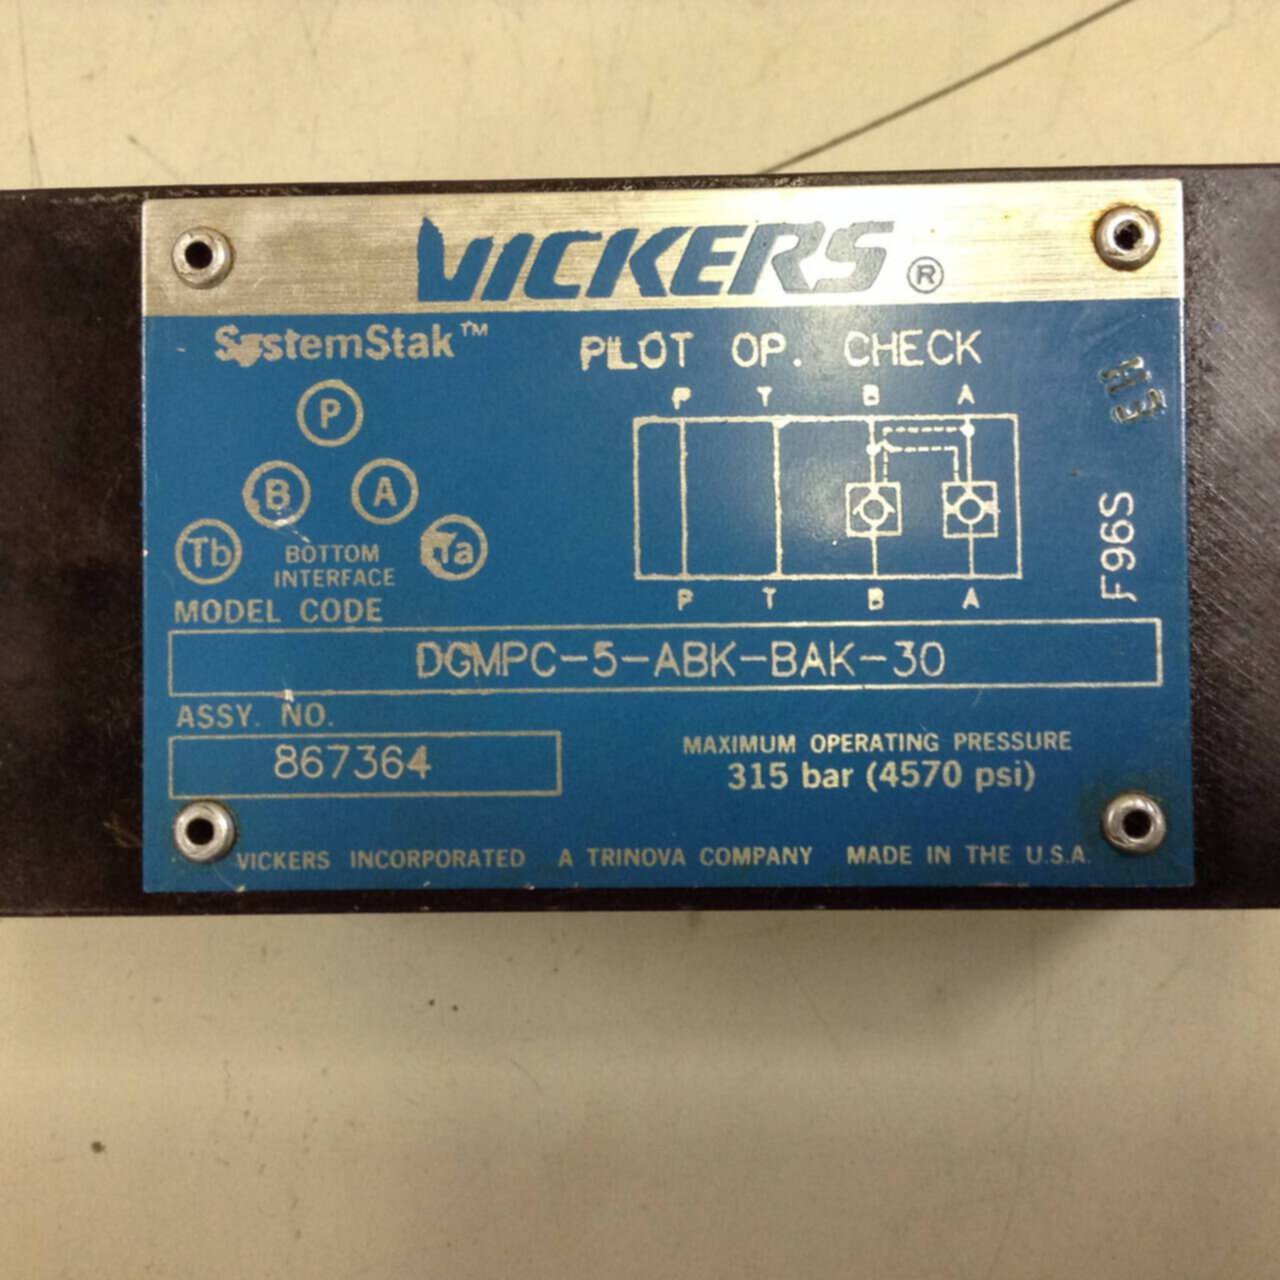 VICKERS Pilot Check Valve DGMPC-5-ABK-BAK-30 315 Bar 4570 psi 867364 